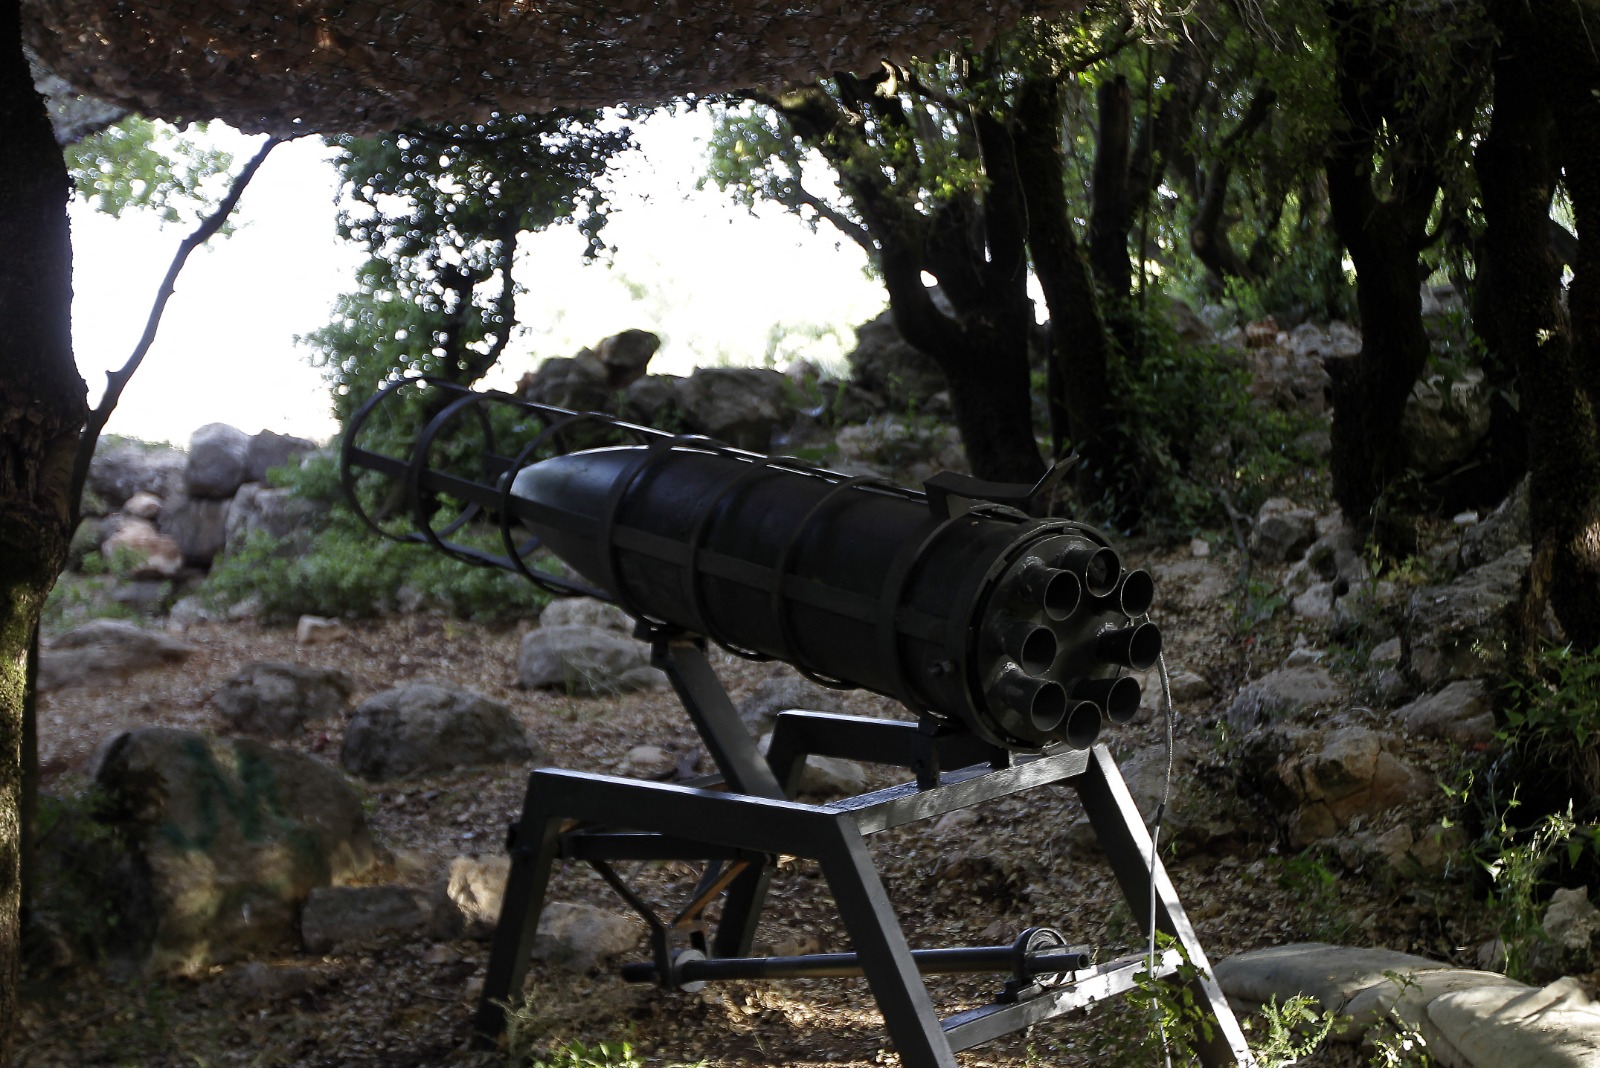 صاروخ رعد-1 الذي استخدمه حزب الله في حرب 2006 مع سرائيل في مقر للجماعة في جنوب لبنان. 21 مايو 2010